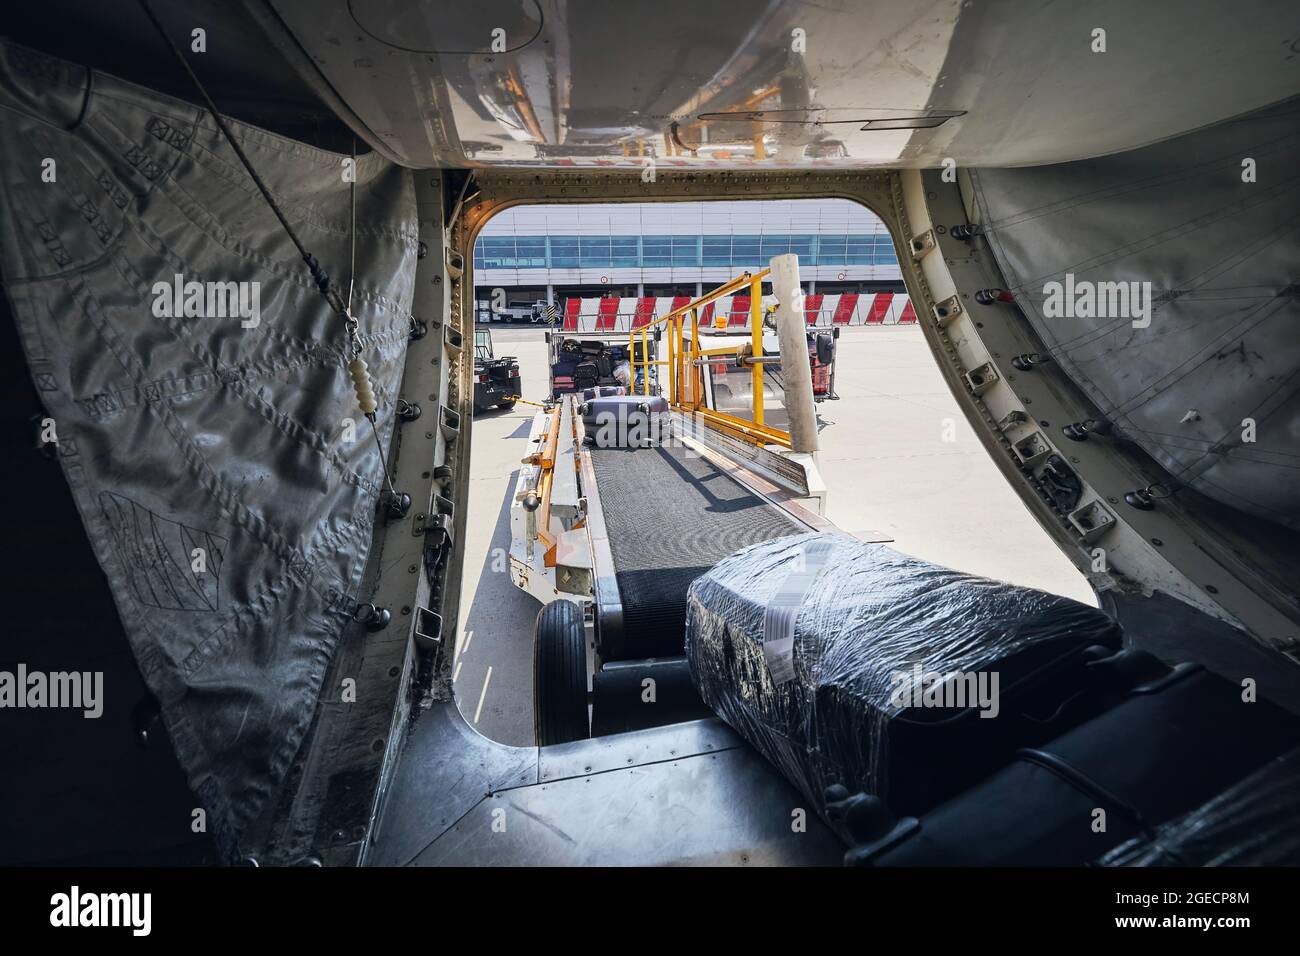 Carico di bagagli in aereo. Valigie su nastro trasportatore in piano. Foto Stock